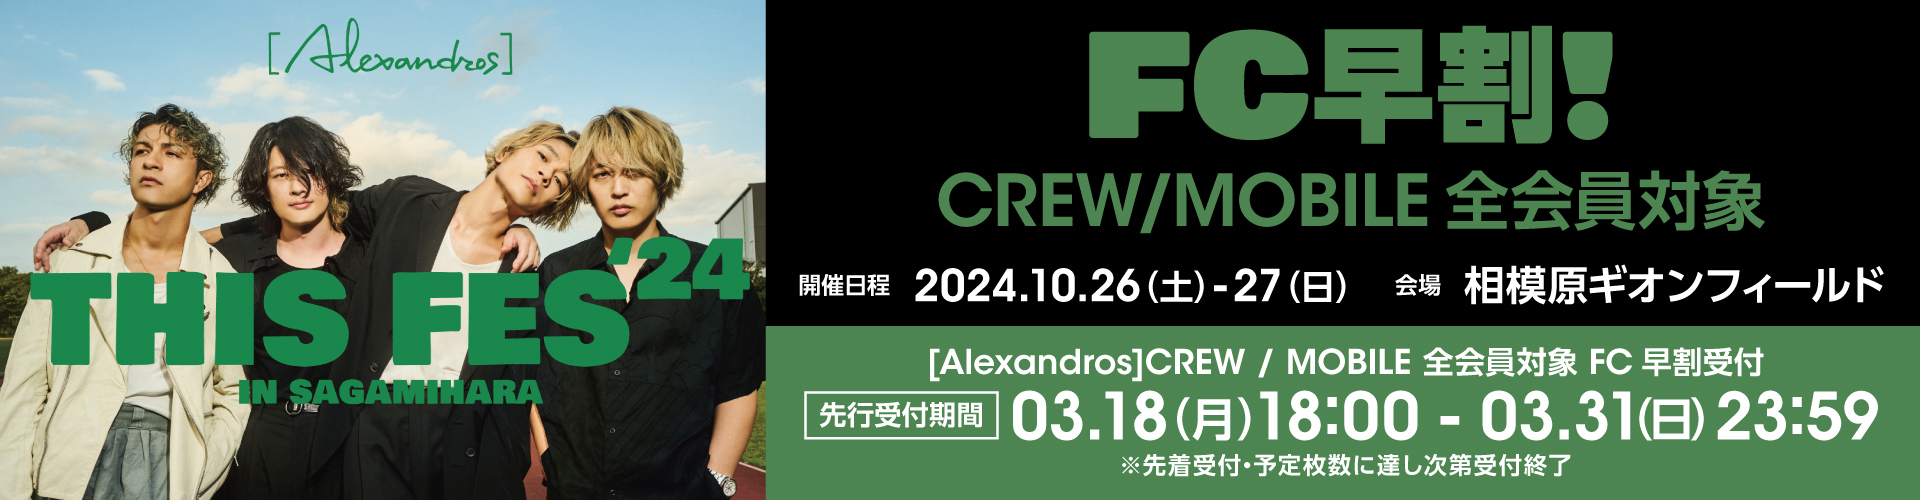 【受付開始】THIS FES ’24 in Sagamihara [Alexandros]CREW&MOBILE 全会員対象 FC早割受付(先着)